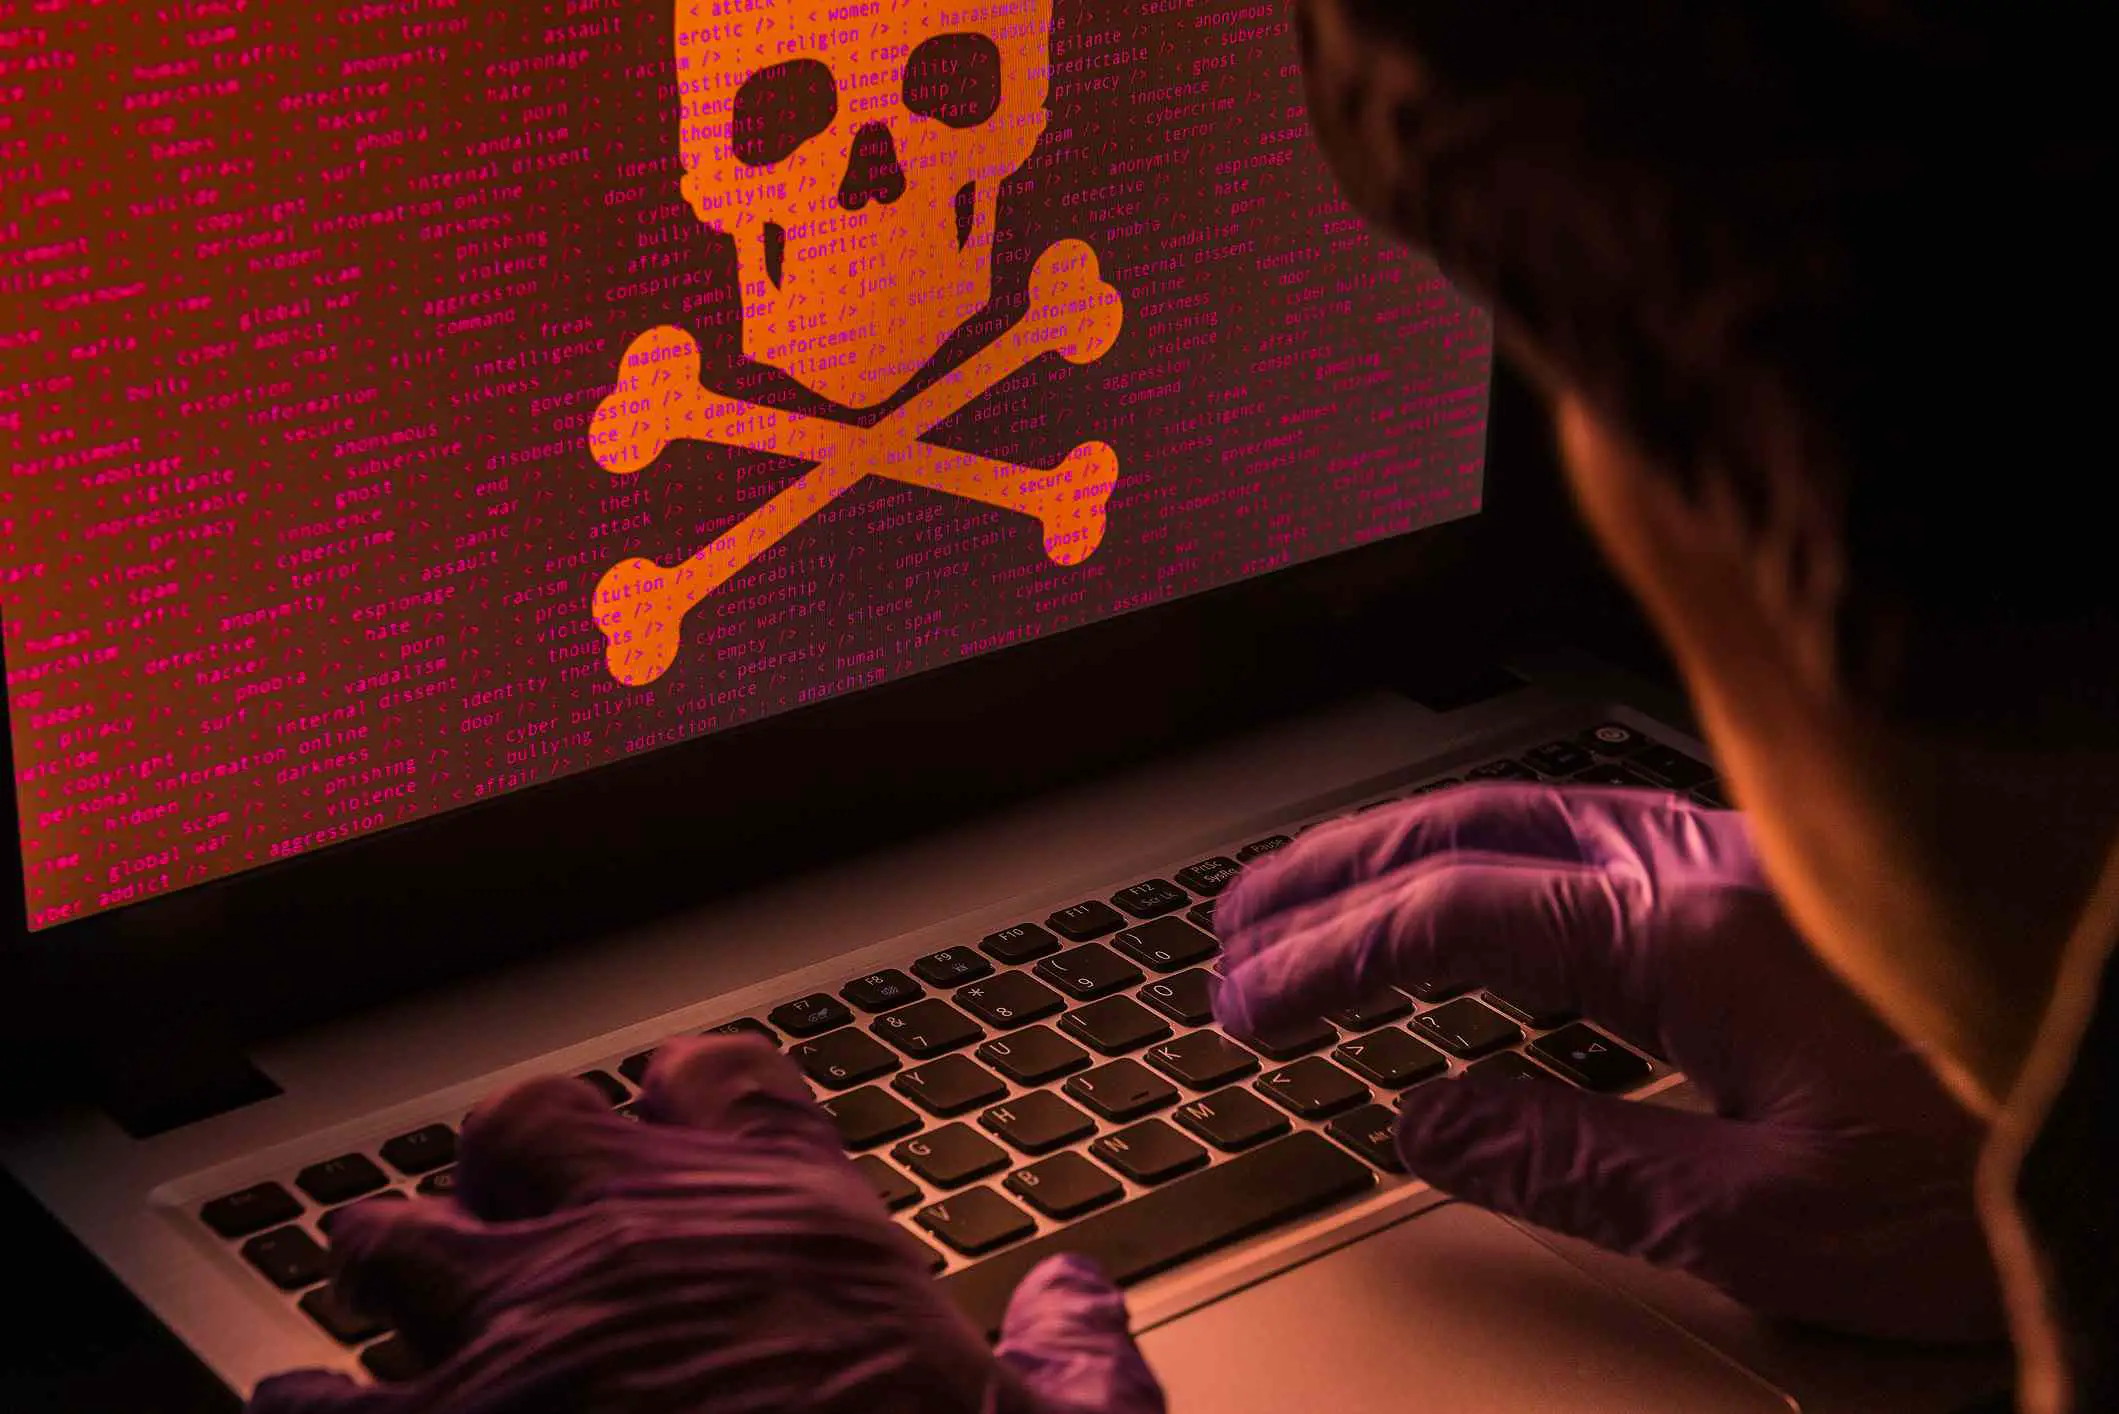 Imagens de um hacker trabalhando em um laptop.